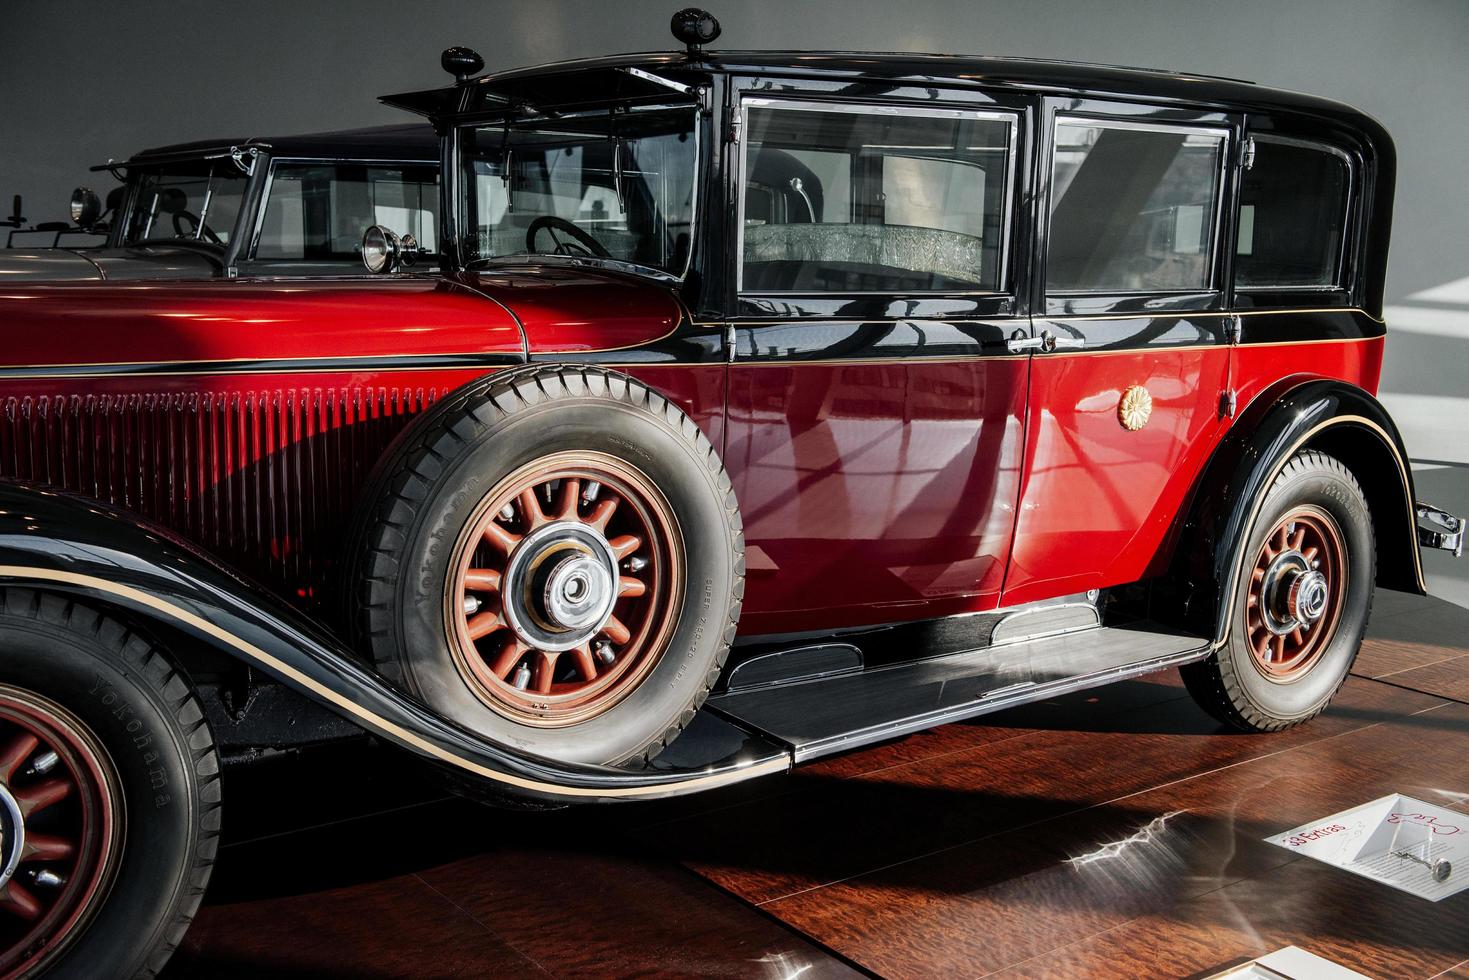 stuttgart, allemagne - 16 octobre 2018 musée mercedes. deux automobiles. vieux véhicule rouge classique. vue de côté. roue de secours sur le coté photo